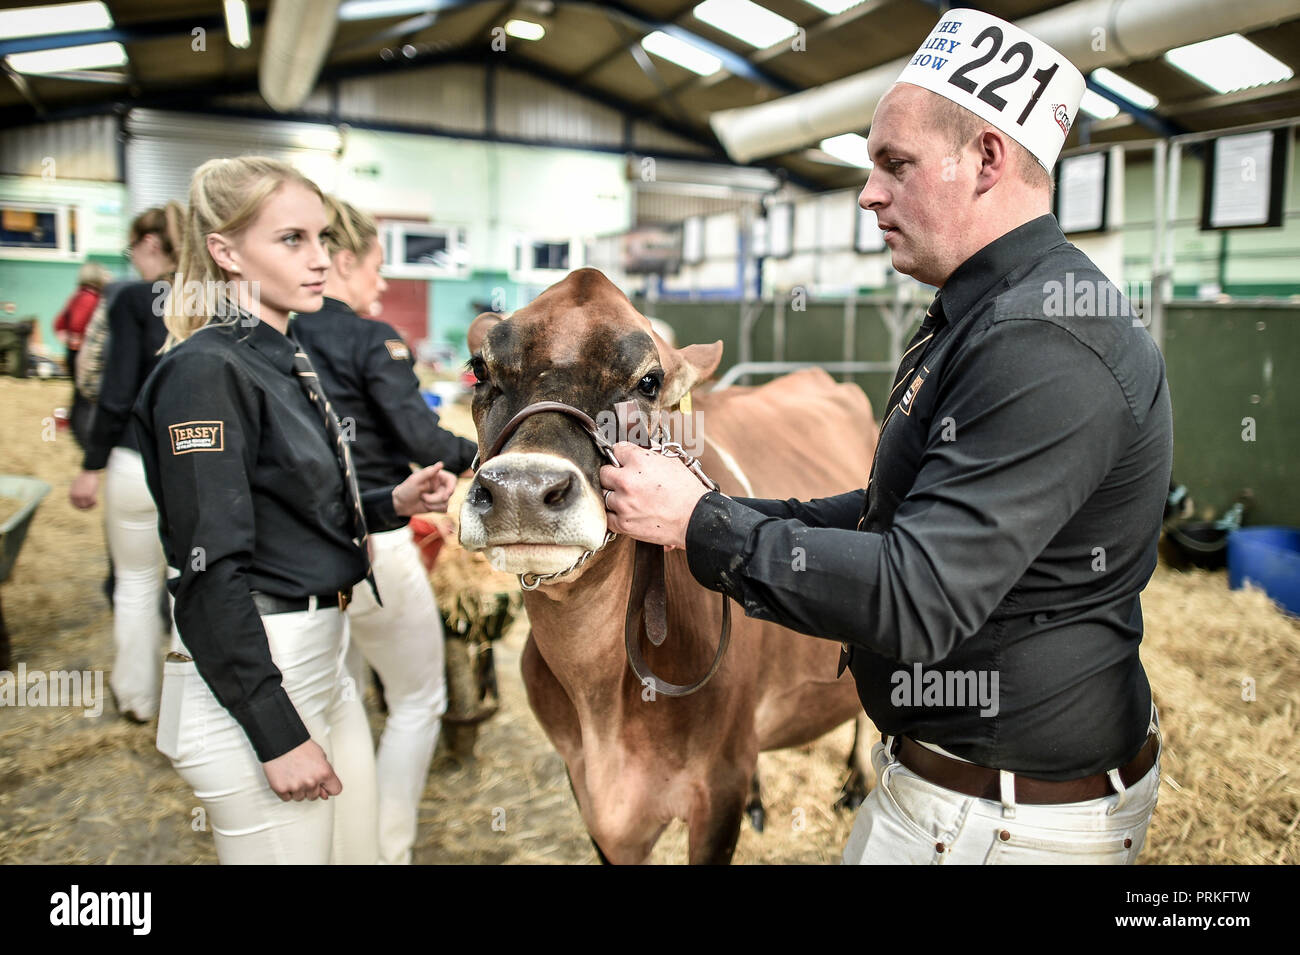 Les manutentionnaires se disputent leur vache dans les hangars du Dairy Show, Bath & West Showground, Shepton Mallet, l'un des plus grands spectacles laitiers du Royaume-Uni avec quelques 3,000 entrées de bétail. Banque D'Images